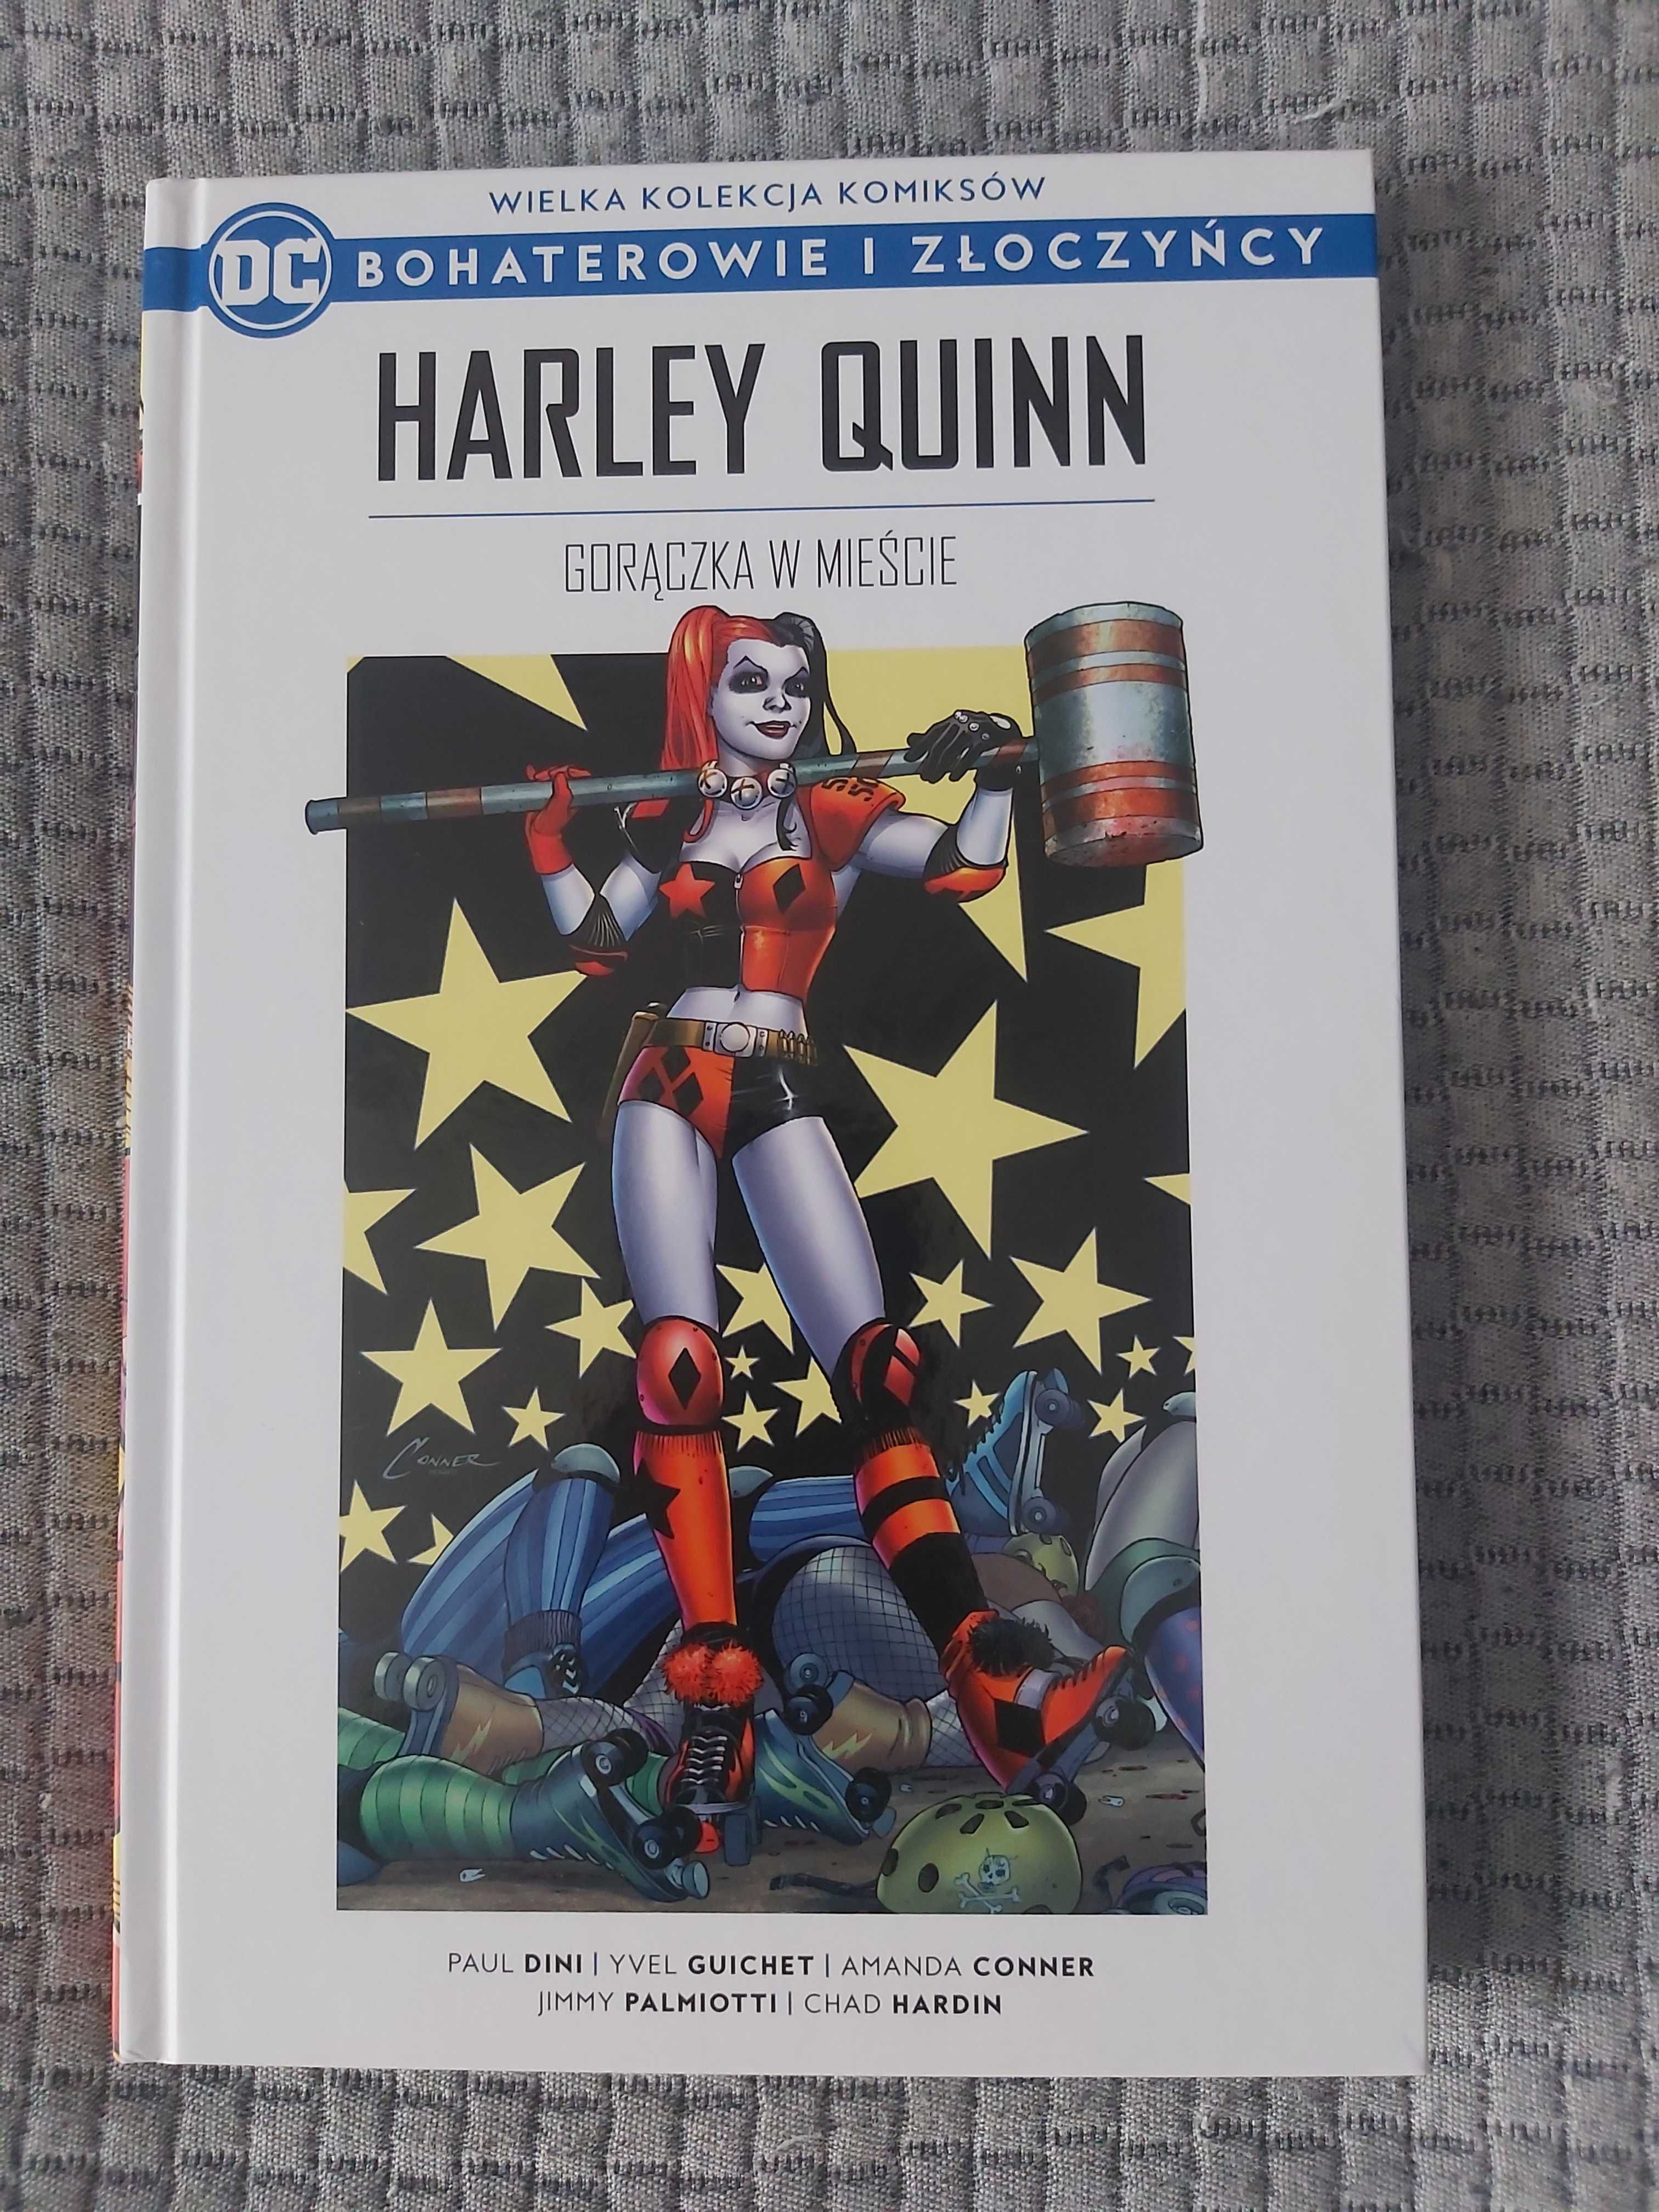 DC Bohaterowie i złoczyńcy Harley